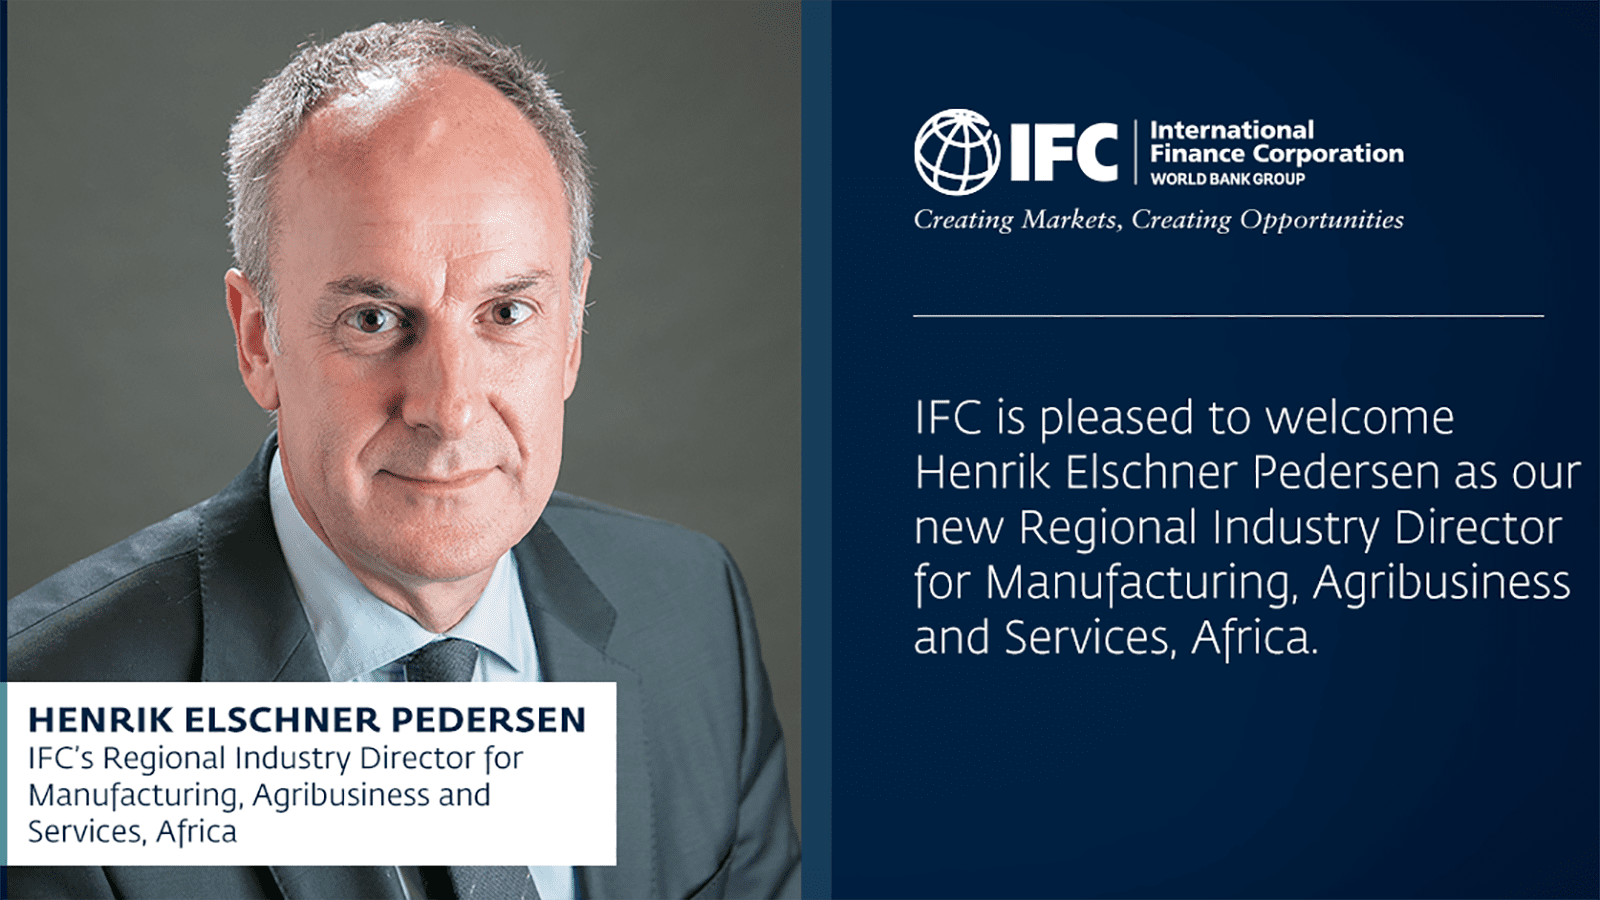 IFC names Henrik Elschner Pedersen as Regional Director for Manufacturing, Agribusiness and Services